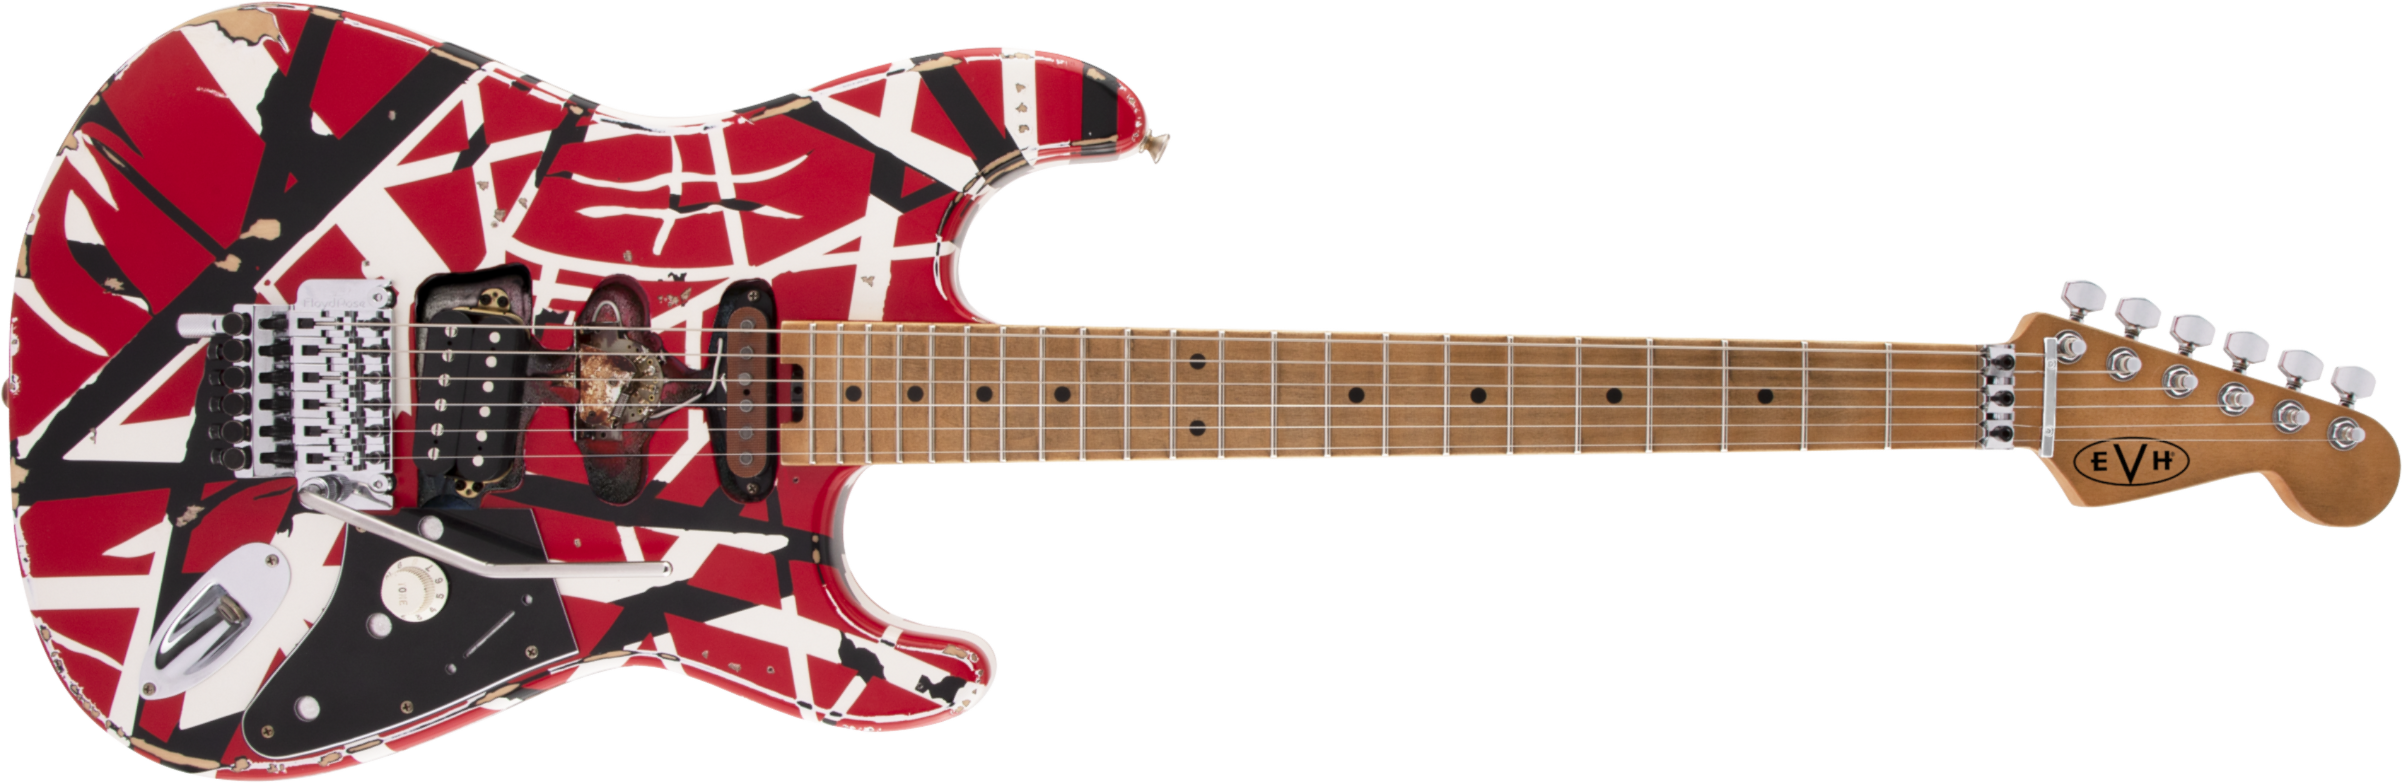 Evh Eddie Van Halen Frankenstein Frankie Striped Series Mex H Fr Mn - Red With Black & White Stripes - Guitarra eléctrica con forma de str. - Main pic